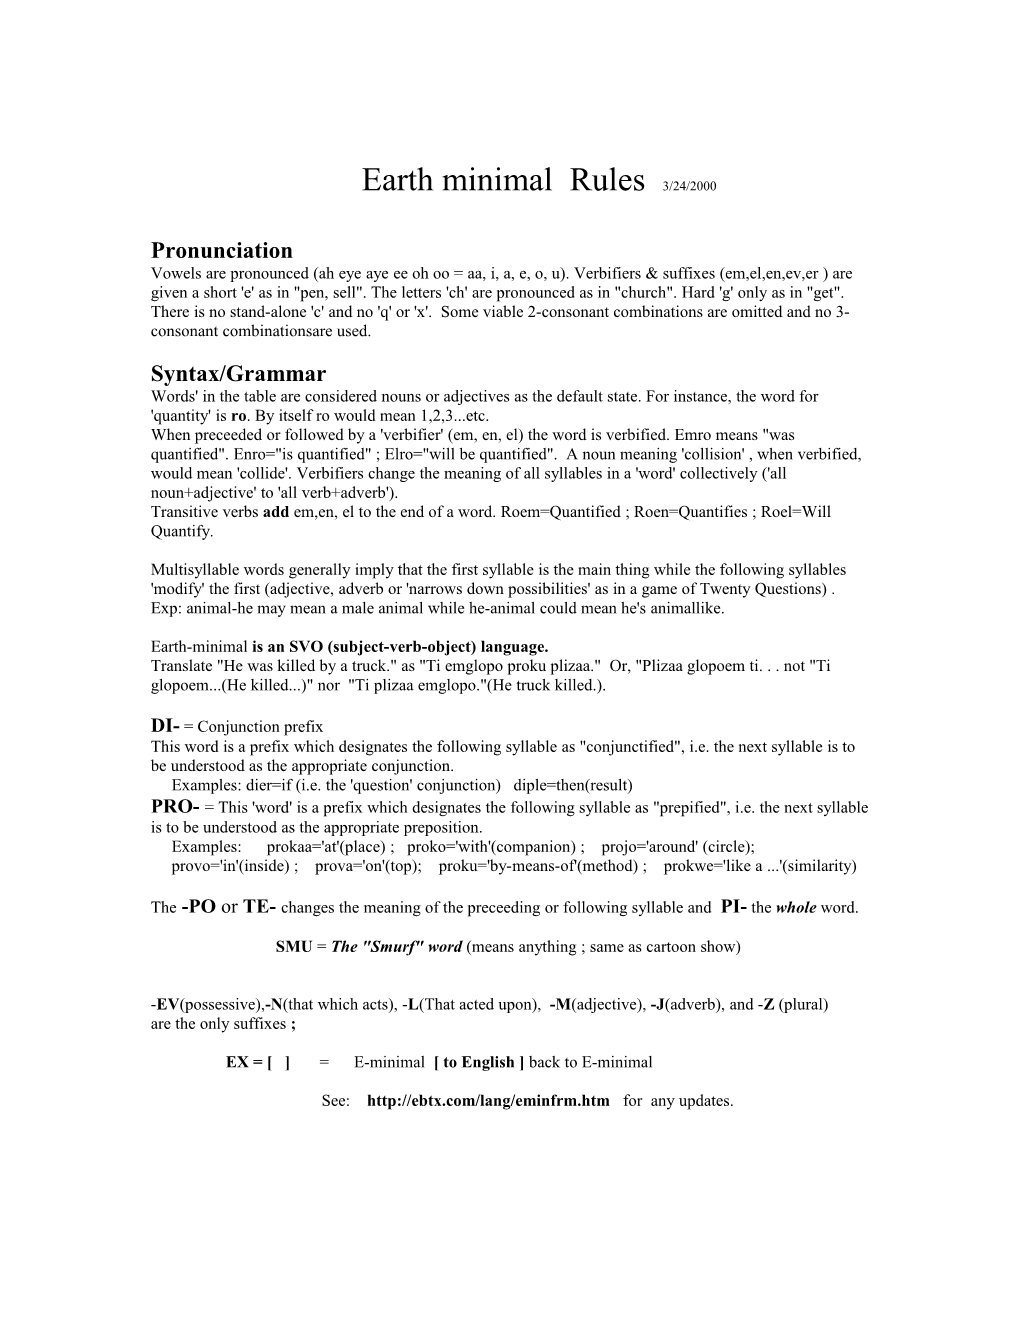 Earth Minimal Rules 6/11/97